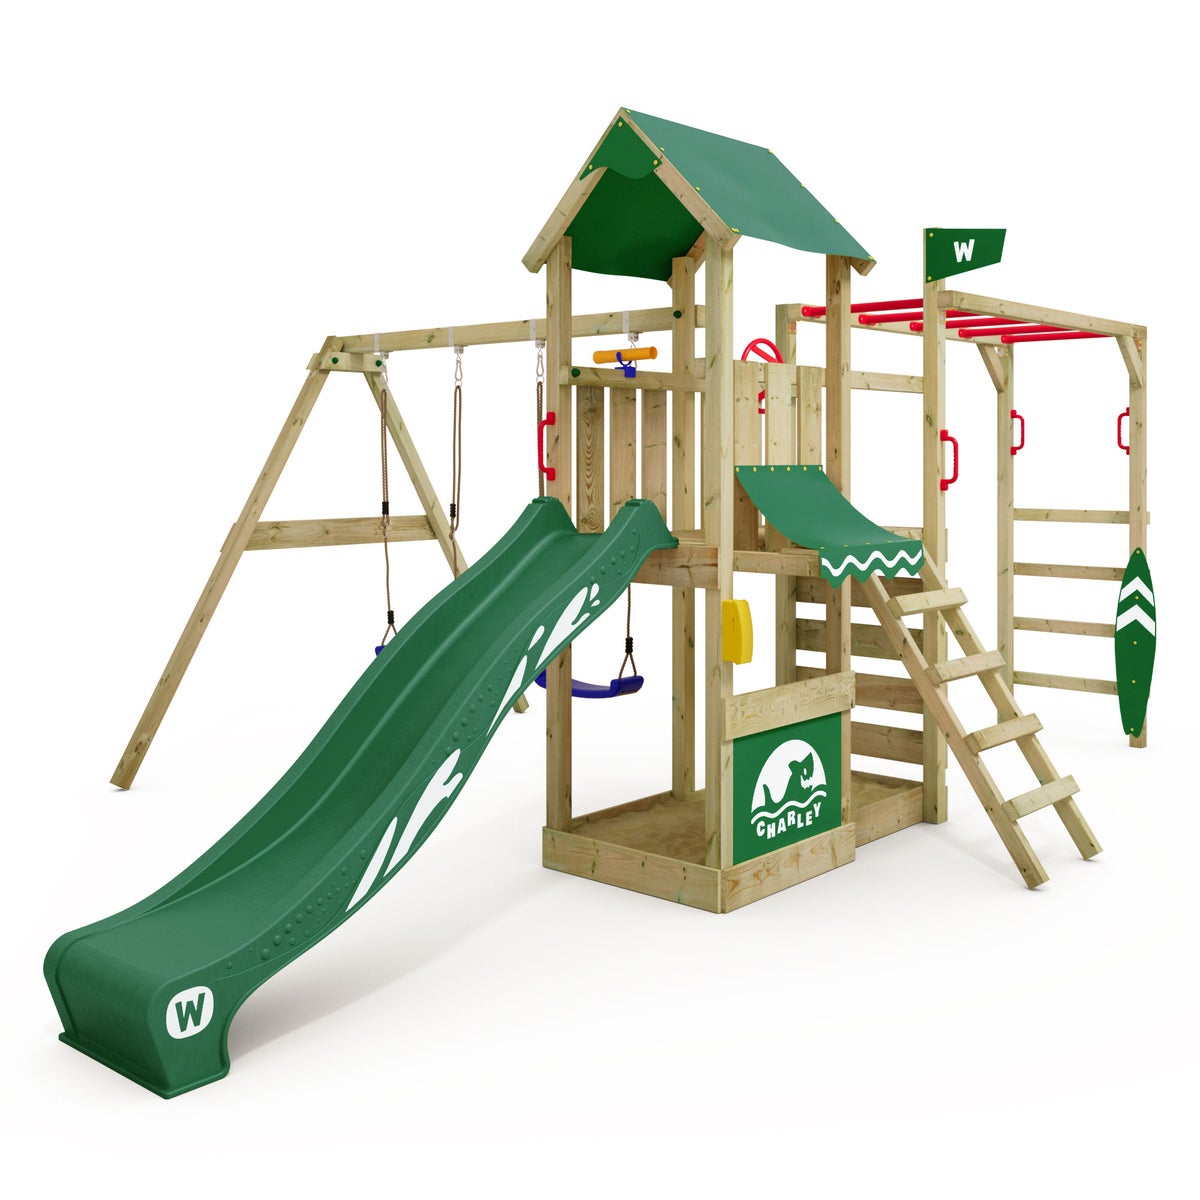 WICKEY Spielturm Klettergerüst Smart Baboon mit Schaukel und Rutsche, Kletterturm mit Sandkasten, Hangelleiter und Spiel-Zubehör - grün